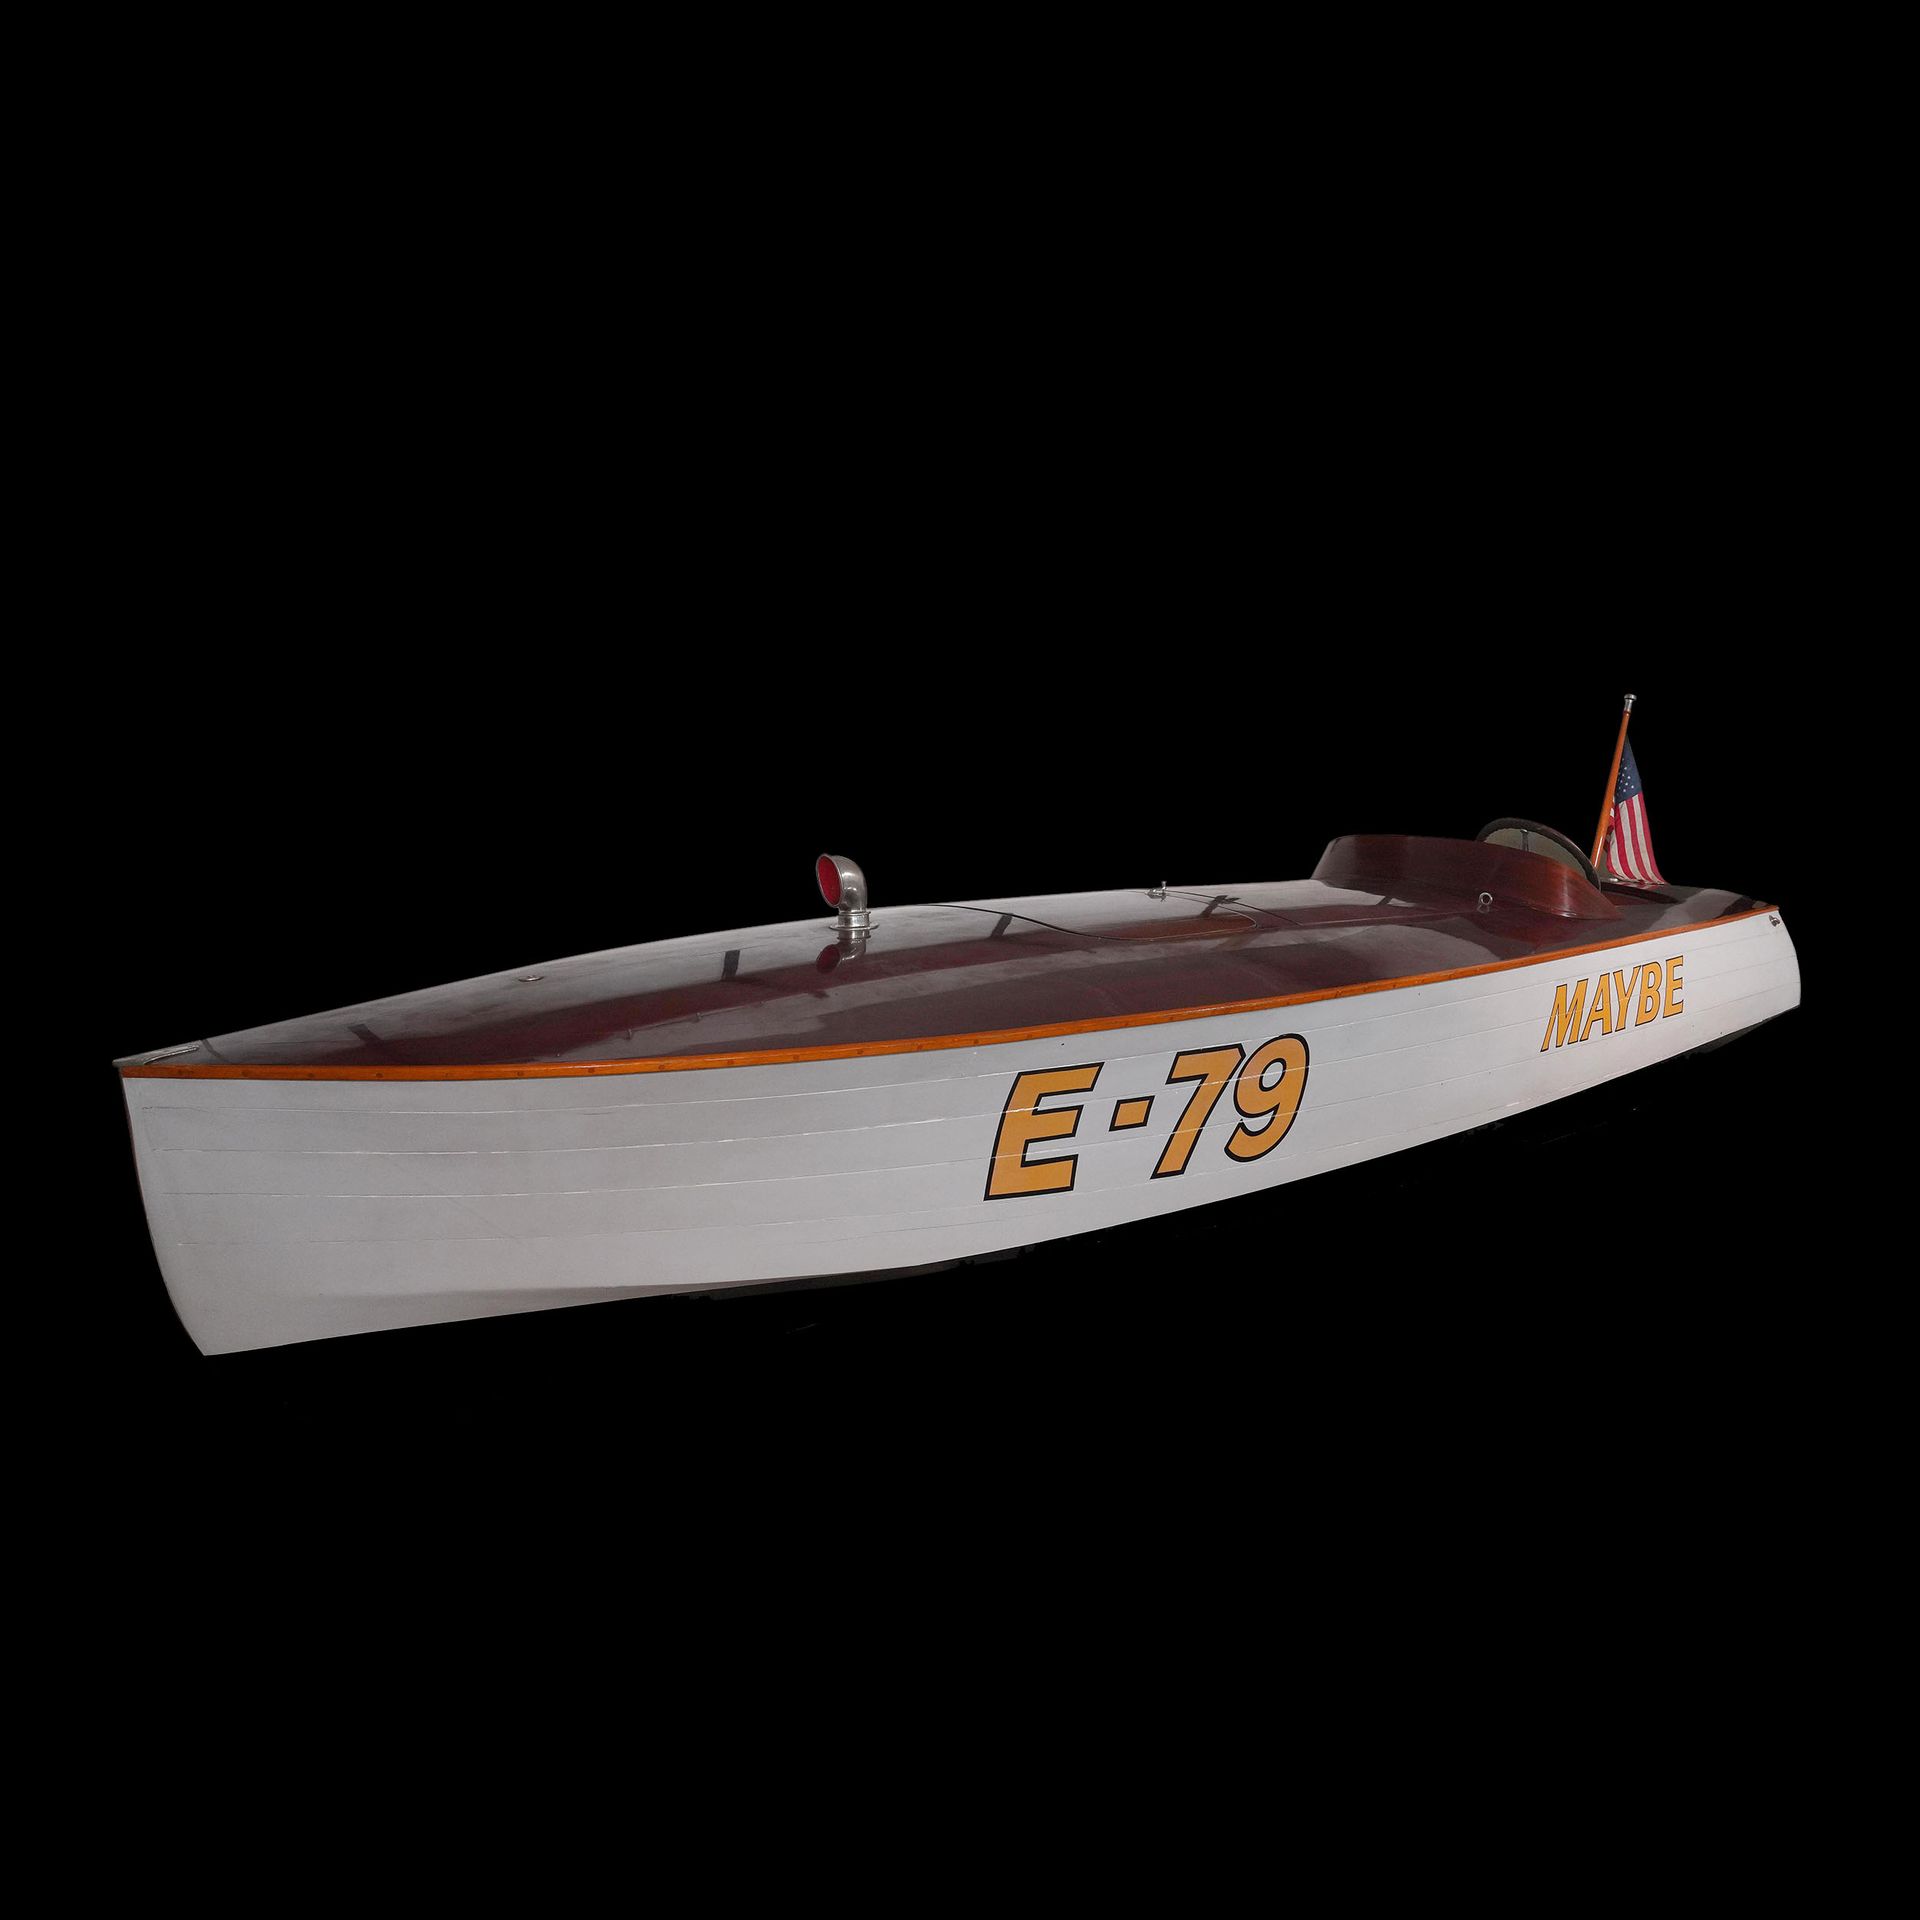 Null 1936
约翰-哈克 by LYMAN SMITH 
竞速小艇 

类别："E
长度 : 5,60 m
宽度：1.74米
重量: 约998公斤
座位数&hellip;